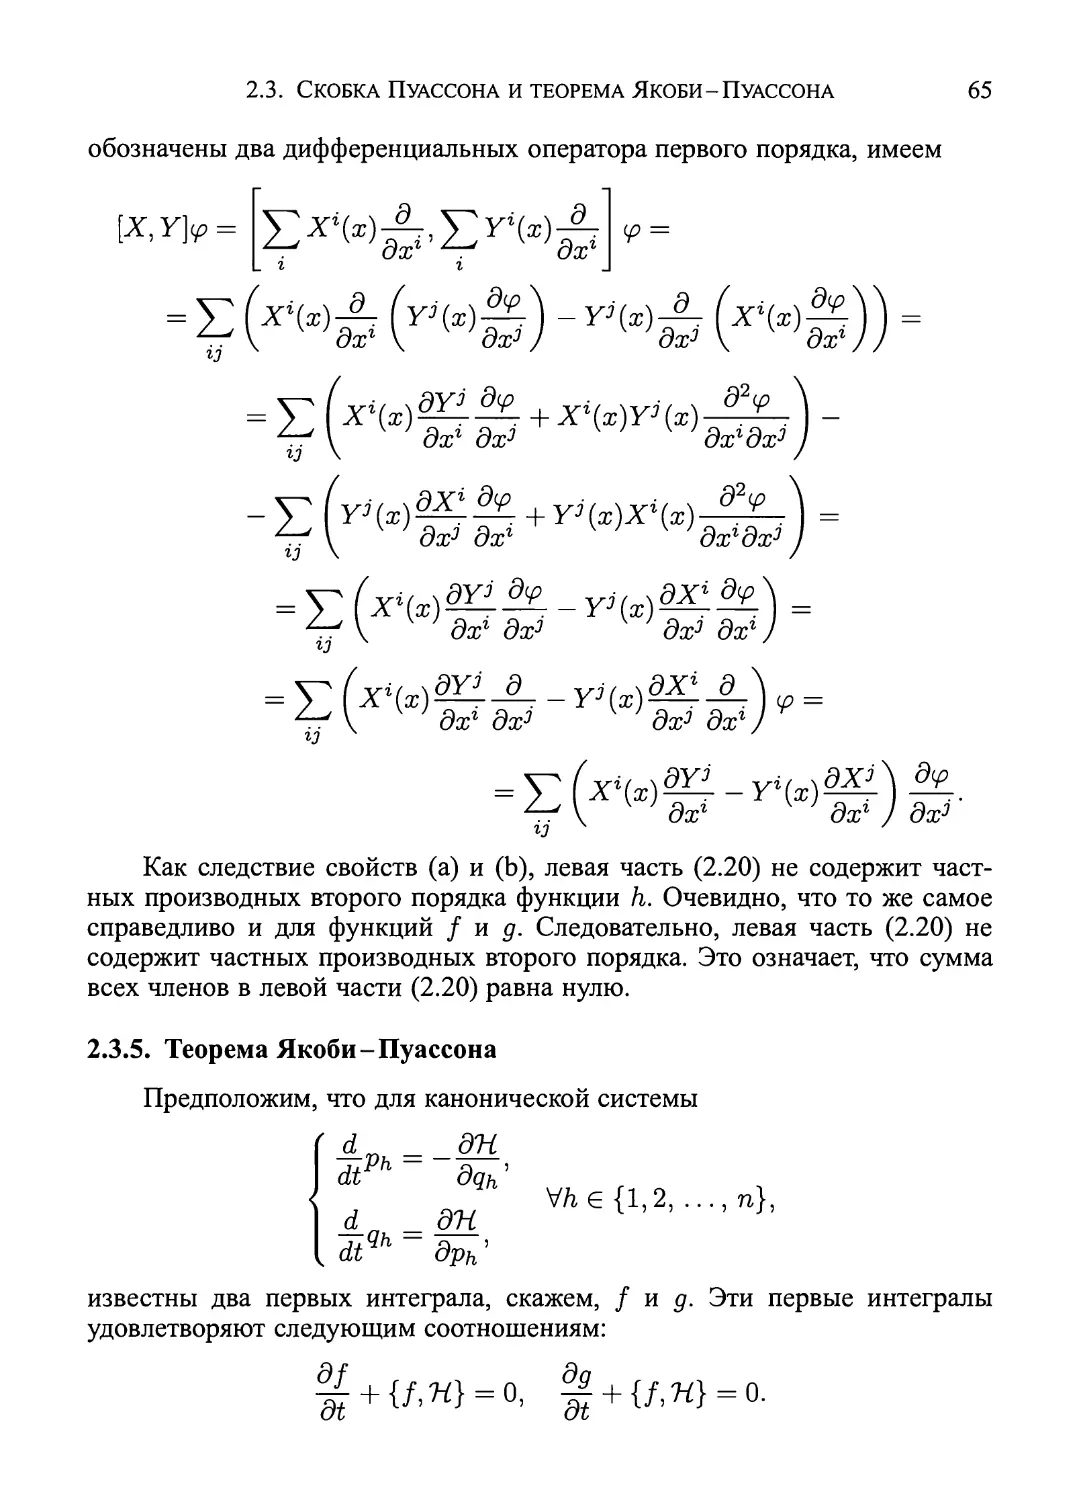 2.3.5.  Теорема  Якоби-Пуассона